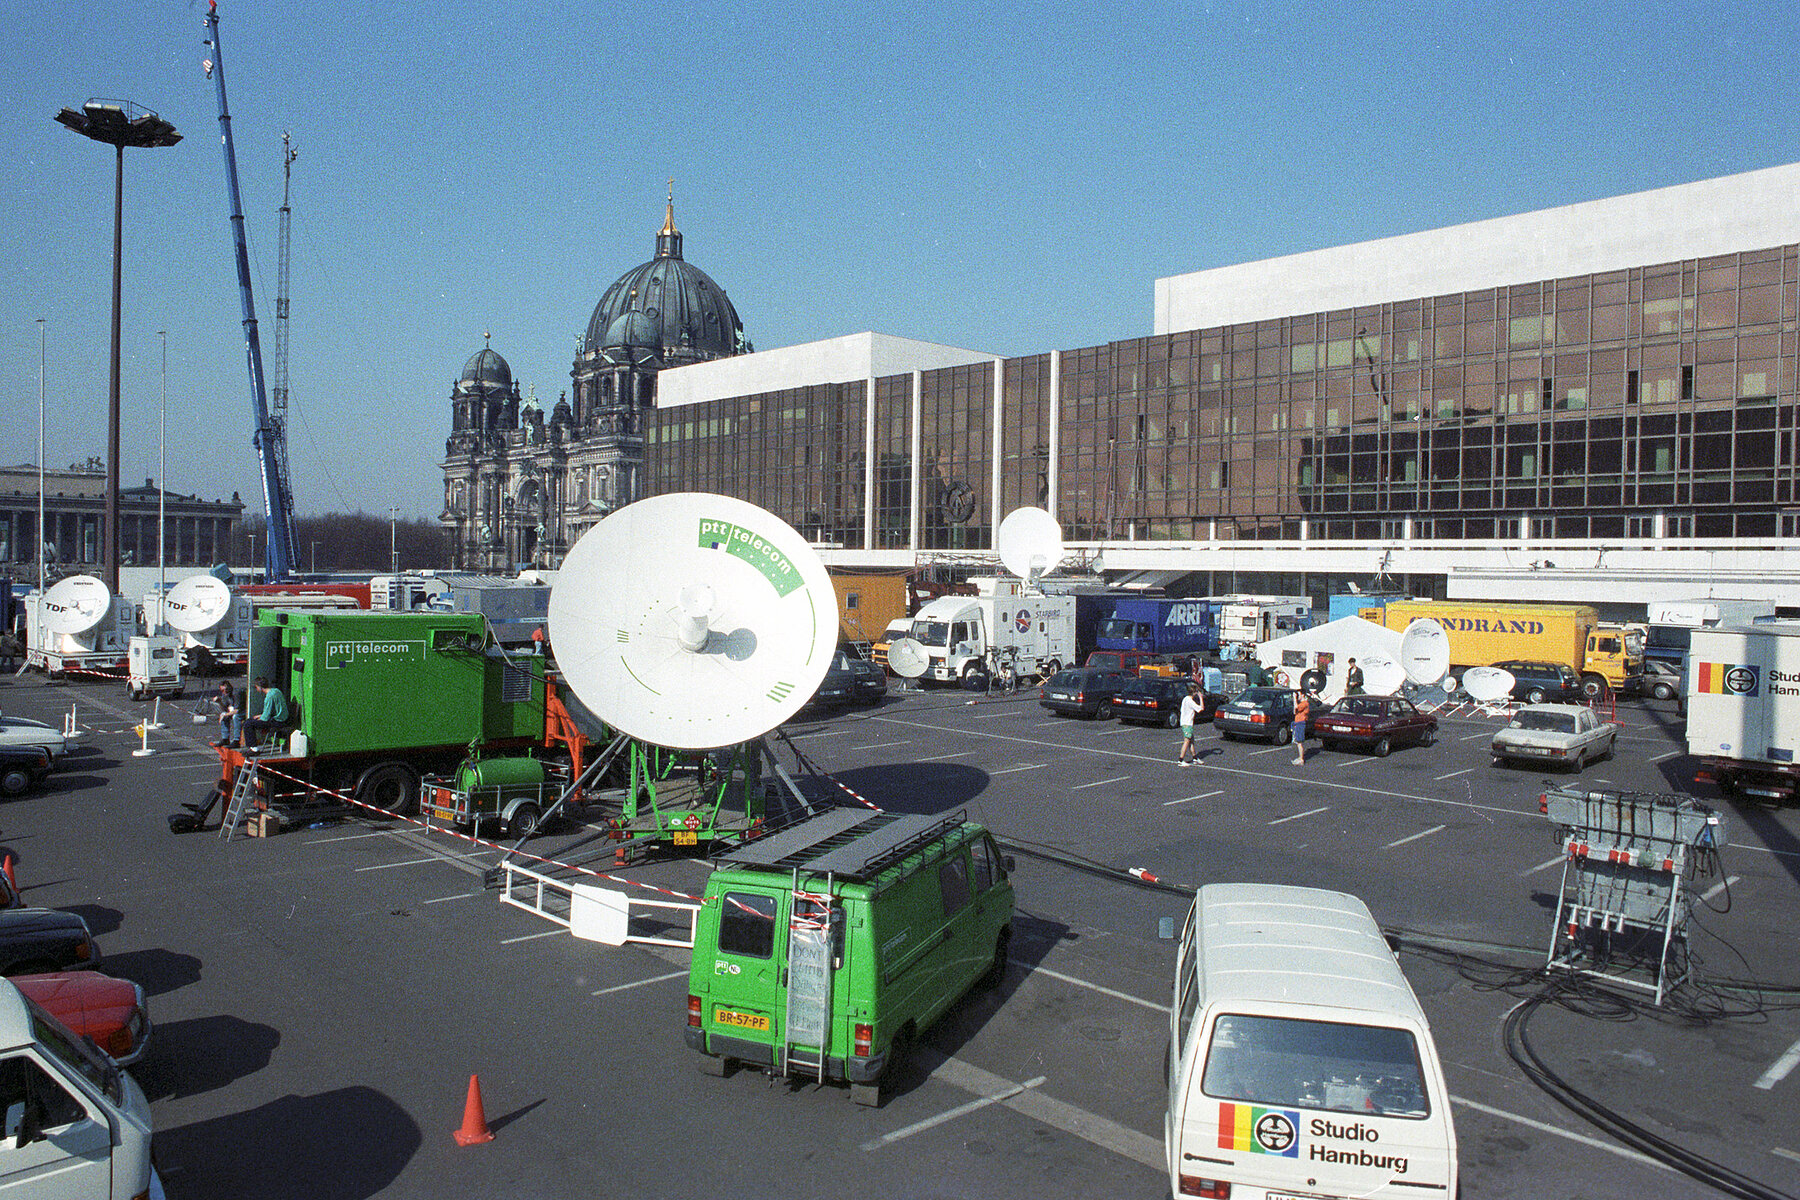 Übertragungswagen mit Satellitenschüsseln stehen auf einem Parkplatz vor dem Palast der Republik. Links hinten befindet sich der Berliner Dom.